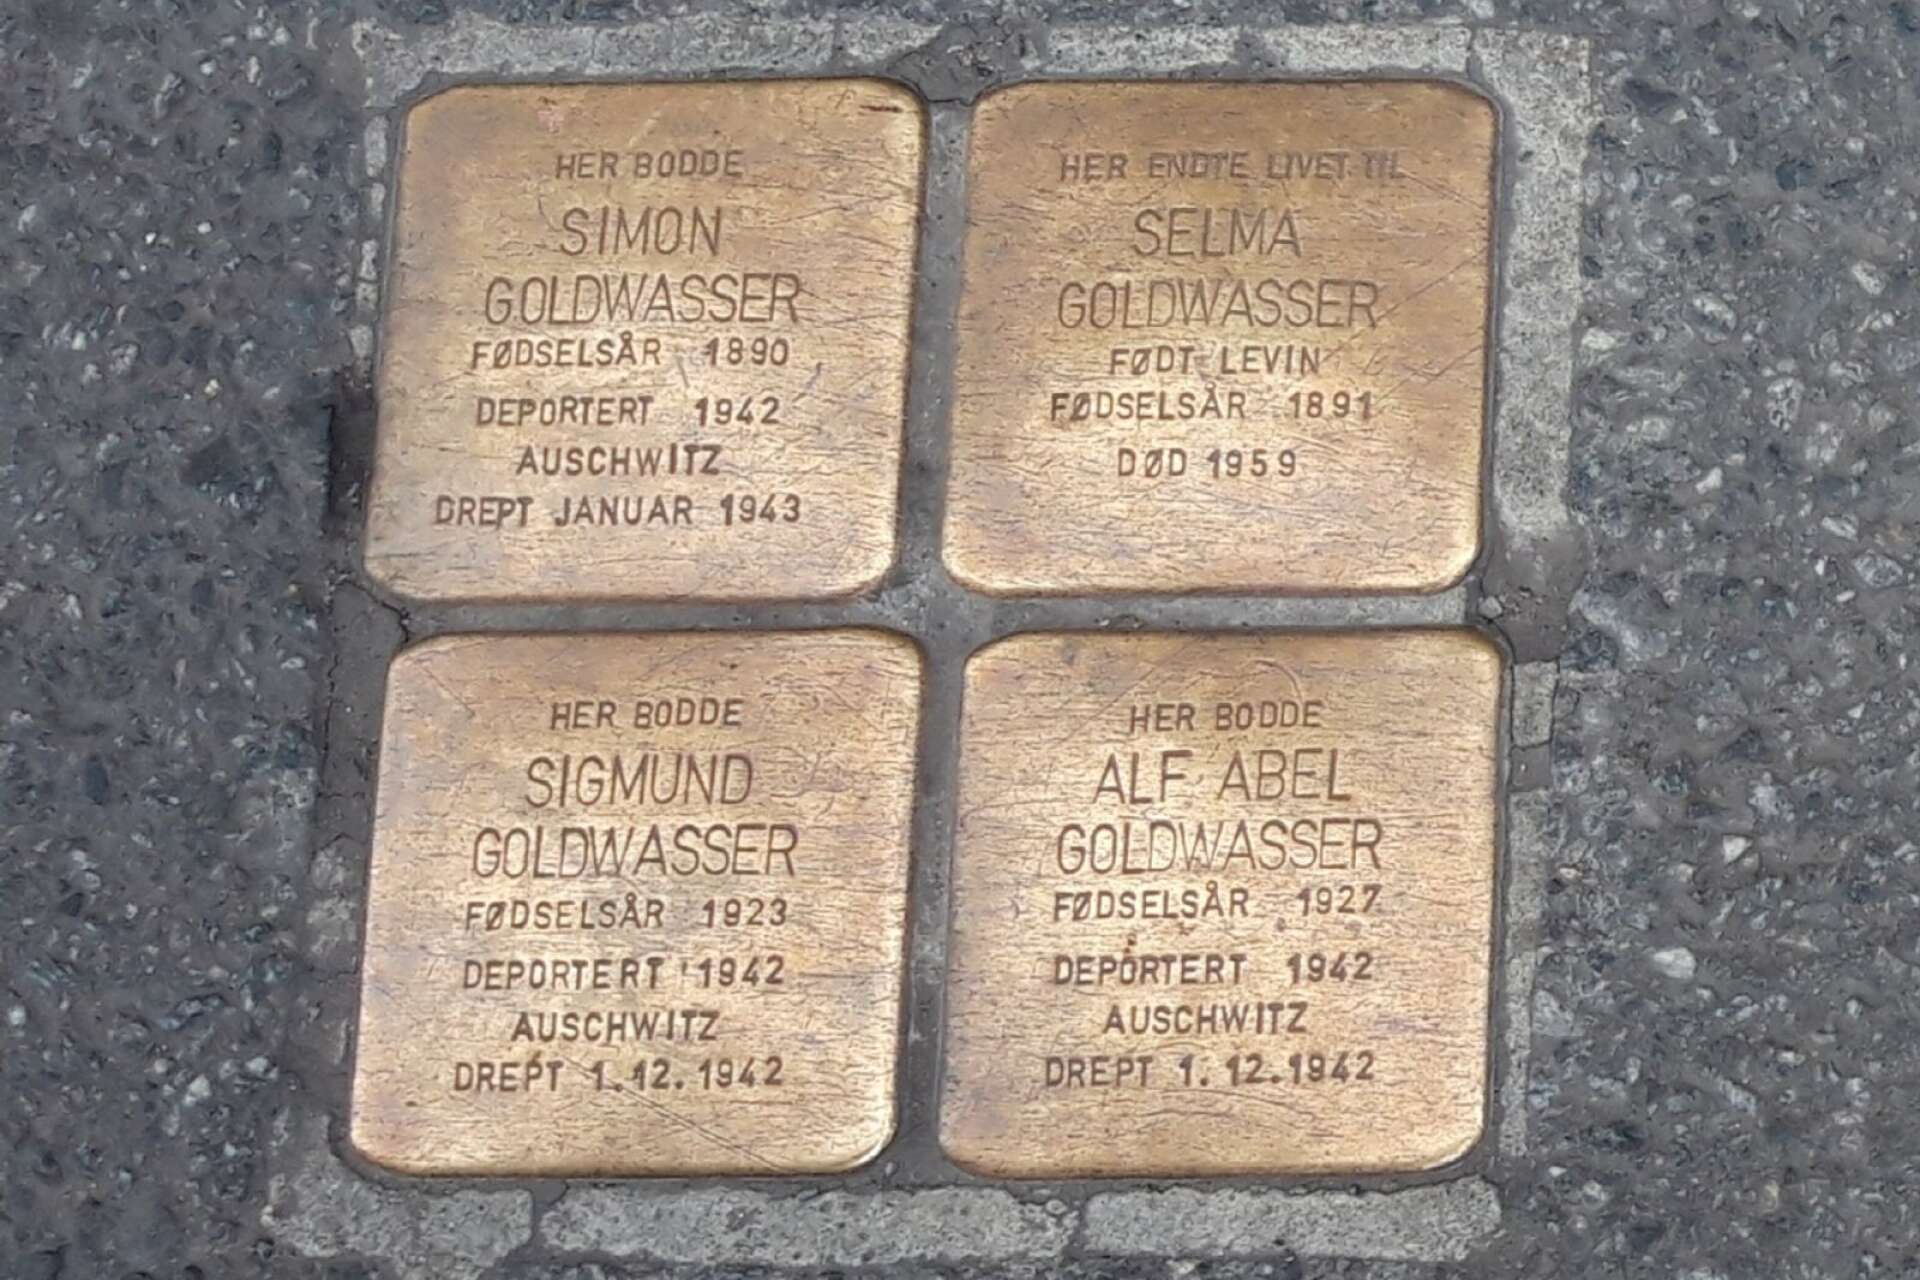 Utanför portar på Oslos gator finns sedan några år tillbaka så kallade snubbelstenar. Stenarnas inskrifter visar namnen på de judiska norska medborgare som en gång bodde där och ska få oss att minnas.